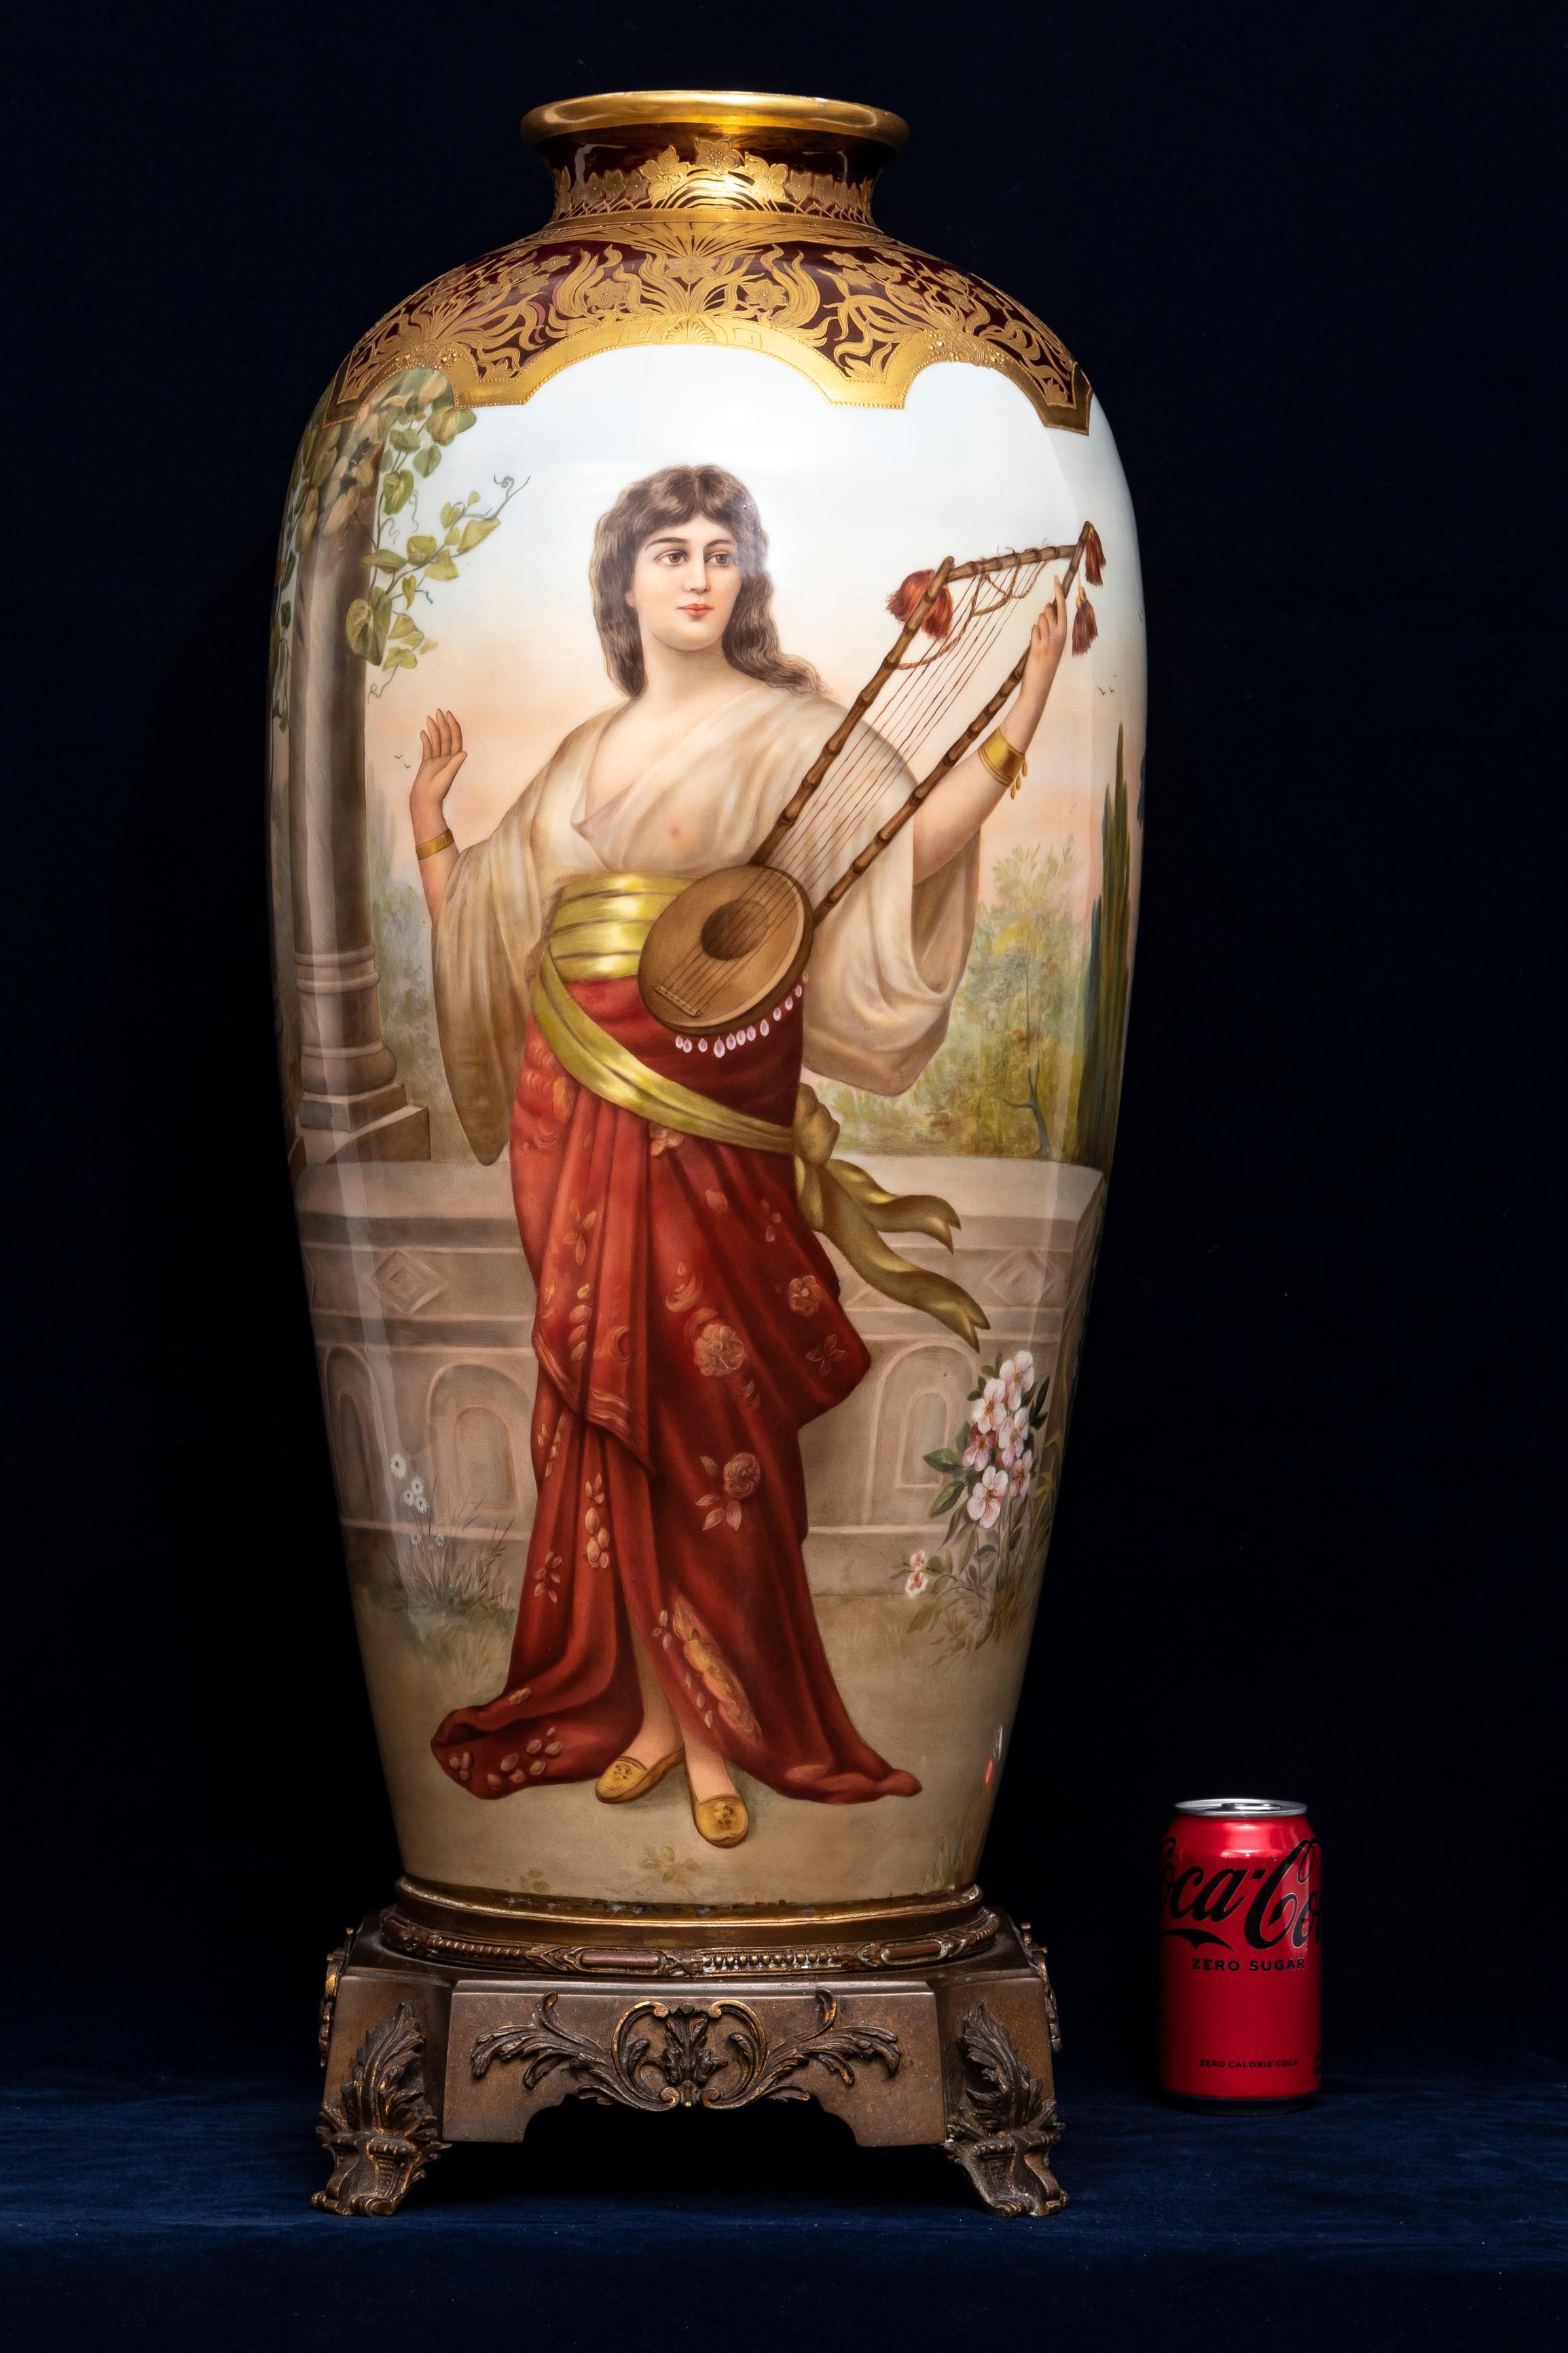 Vase monumental en porcelaine de Vienne du XIXe siècle, magnifiquement émaillé et décoré à 360 degrés, avec monture en bronze doré, signé Wagner. Le vase est décoré d'or en relief 24K, avec au centre une magnifique beauté émaillée à la main jouant